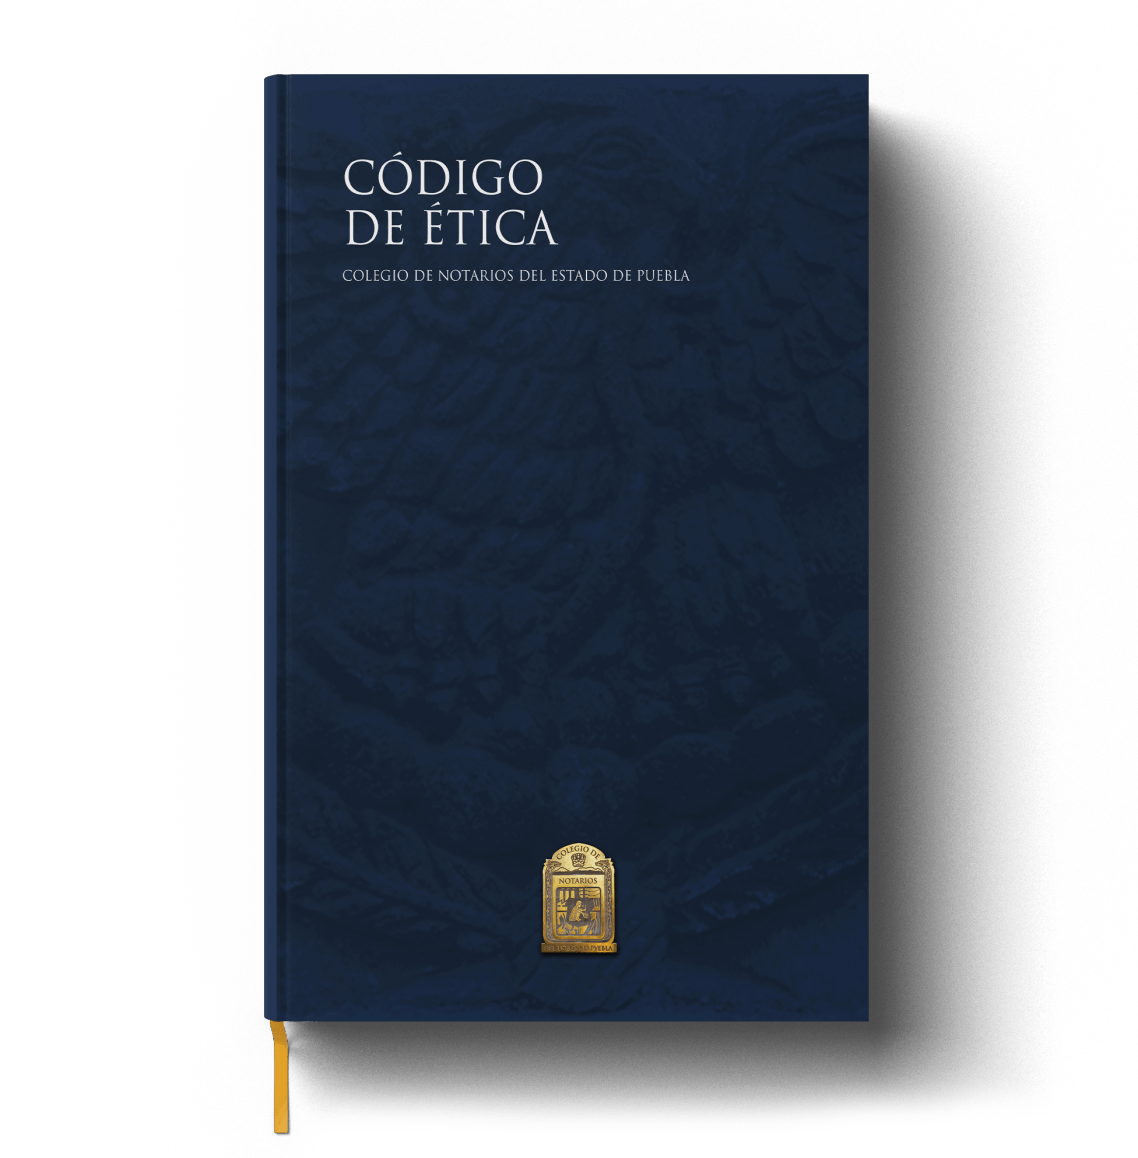 Consejo de Notarios del Estado de Puebla 2019-2021